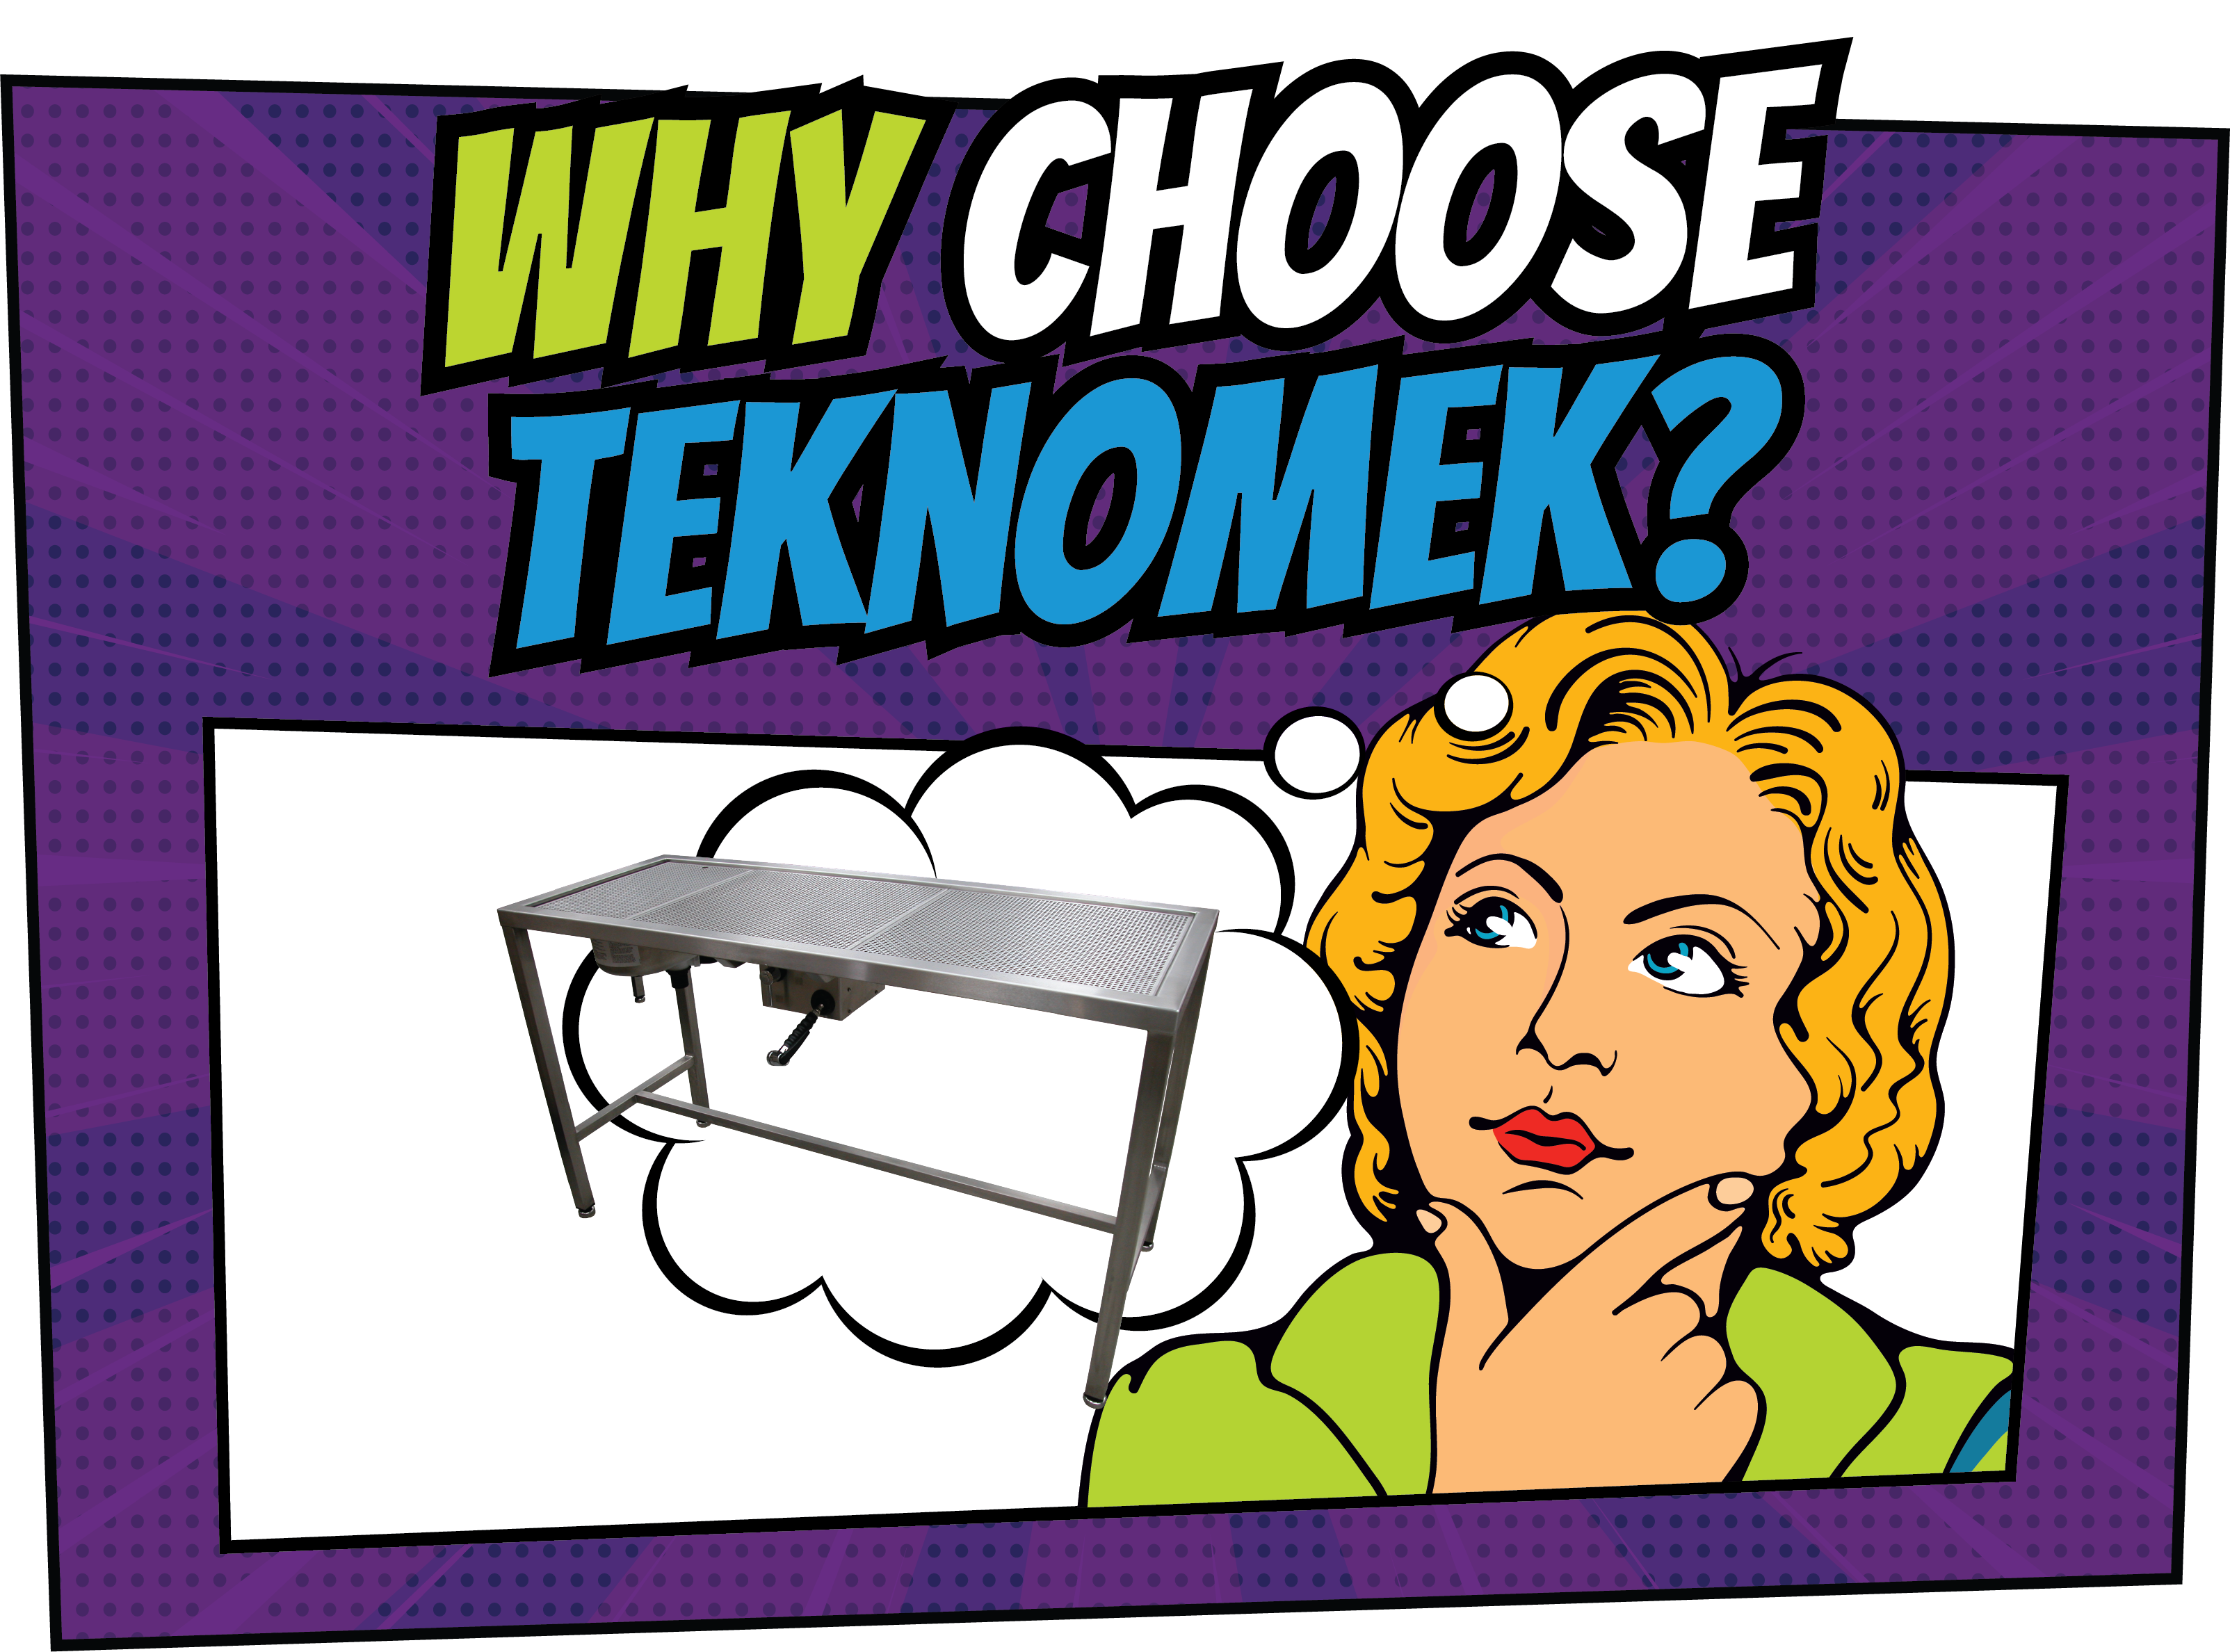 The 5 Whys of Teknomek